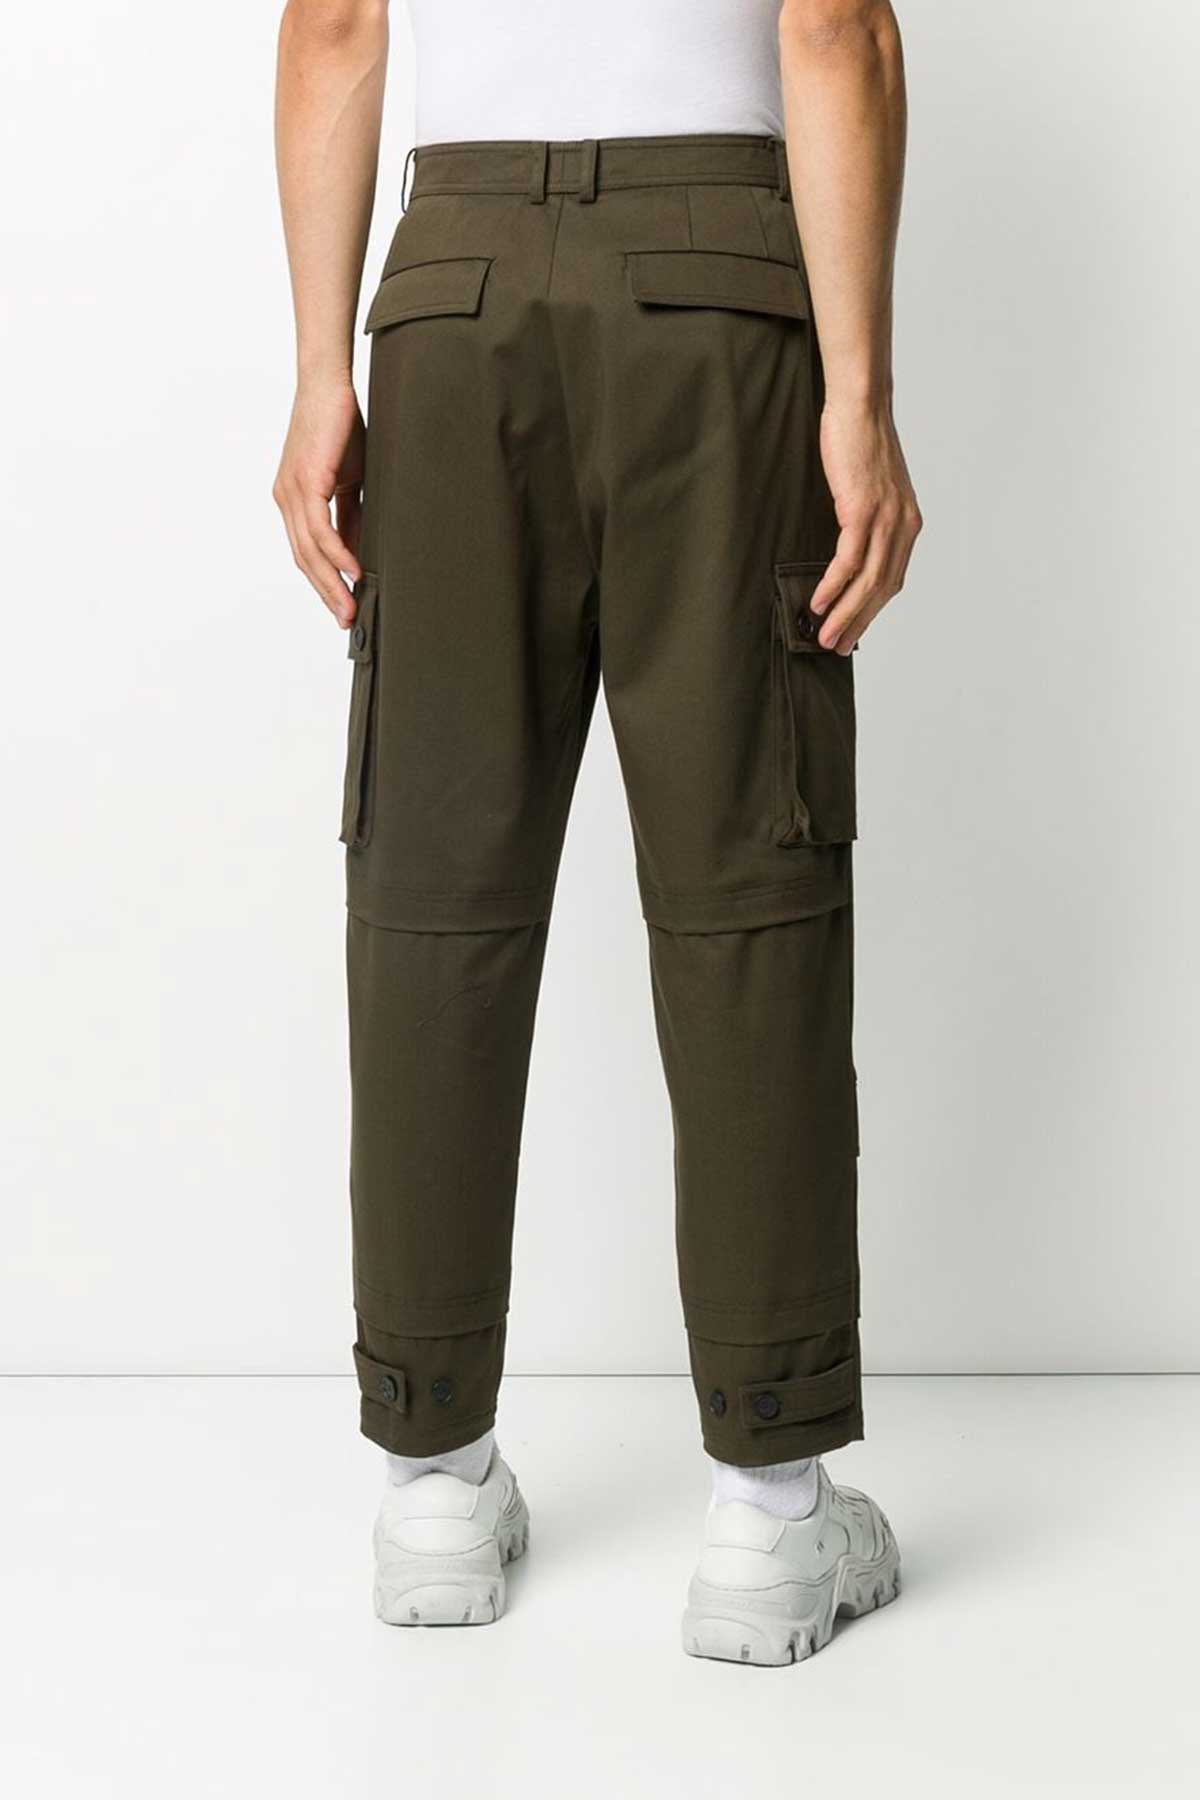 Les Hommes Düşük Ağlı Kargo Pantolon-Libas Trendy Fashion Store